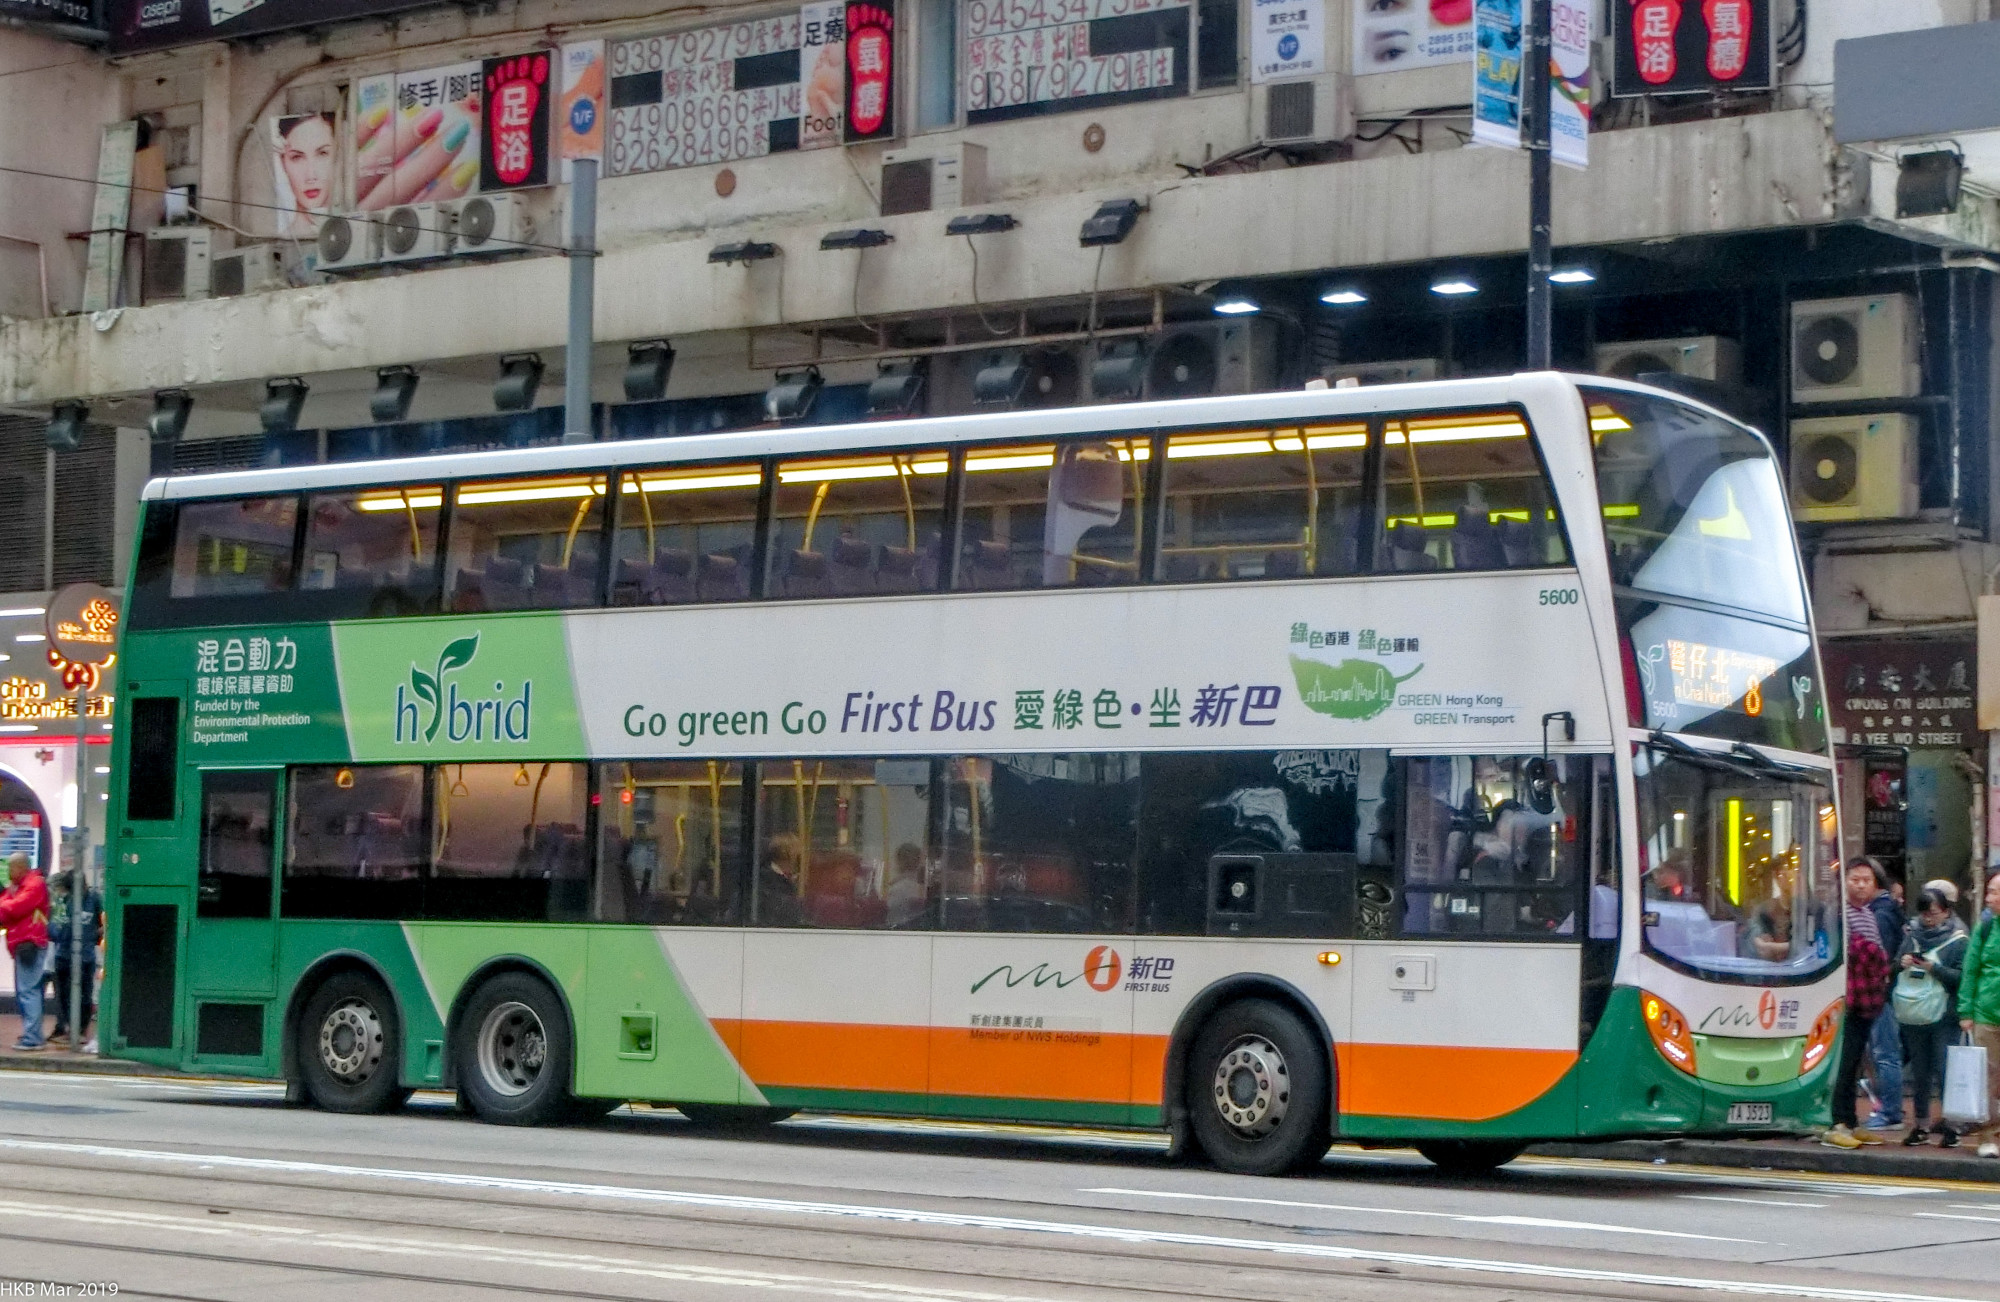 城巴/新巴訓練巴士T16(HD4364) - 巴士攝影作品貼圖區 (B3) - hkitalk.net 香港交通資訊網 - Powered ...